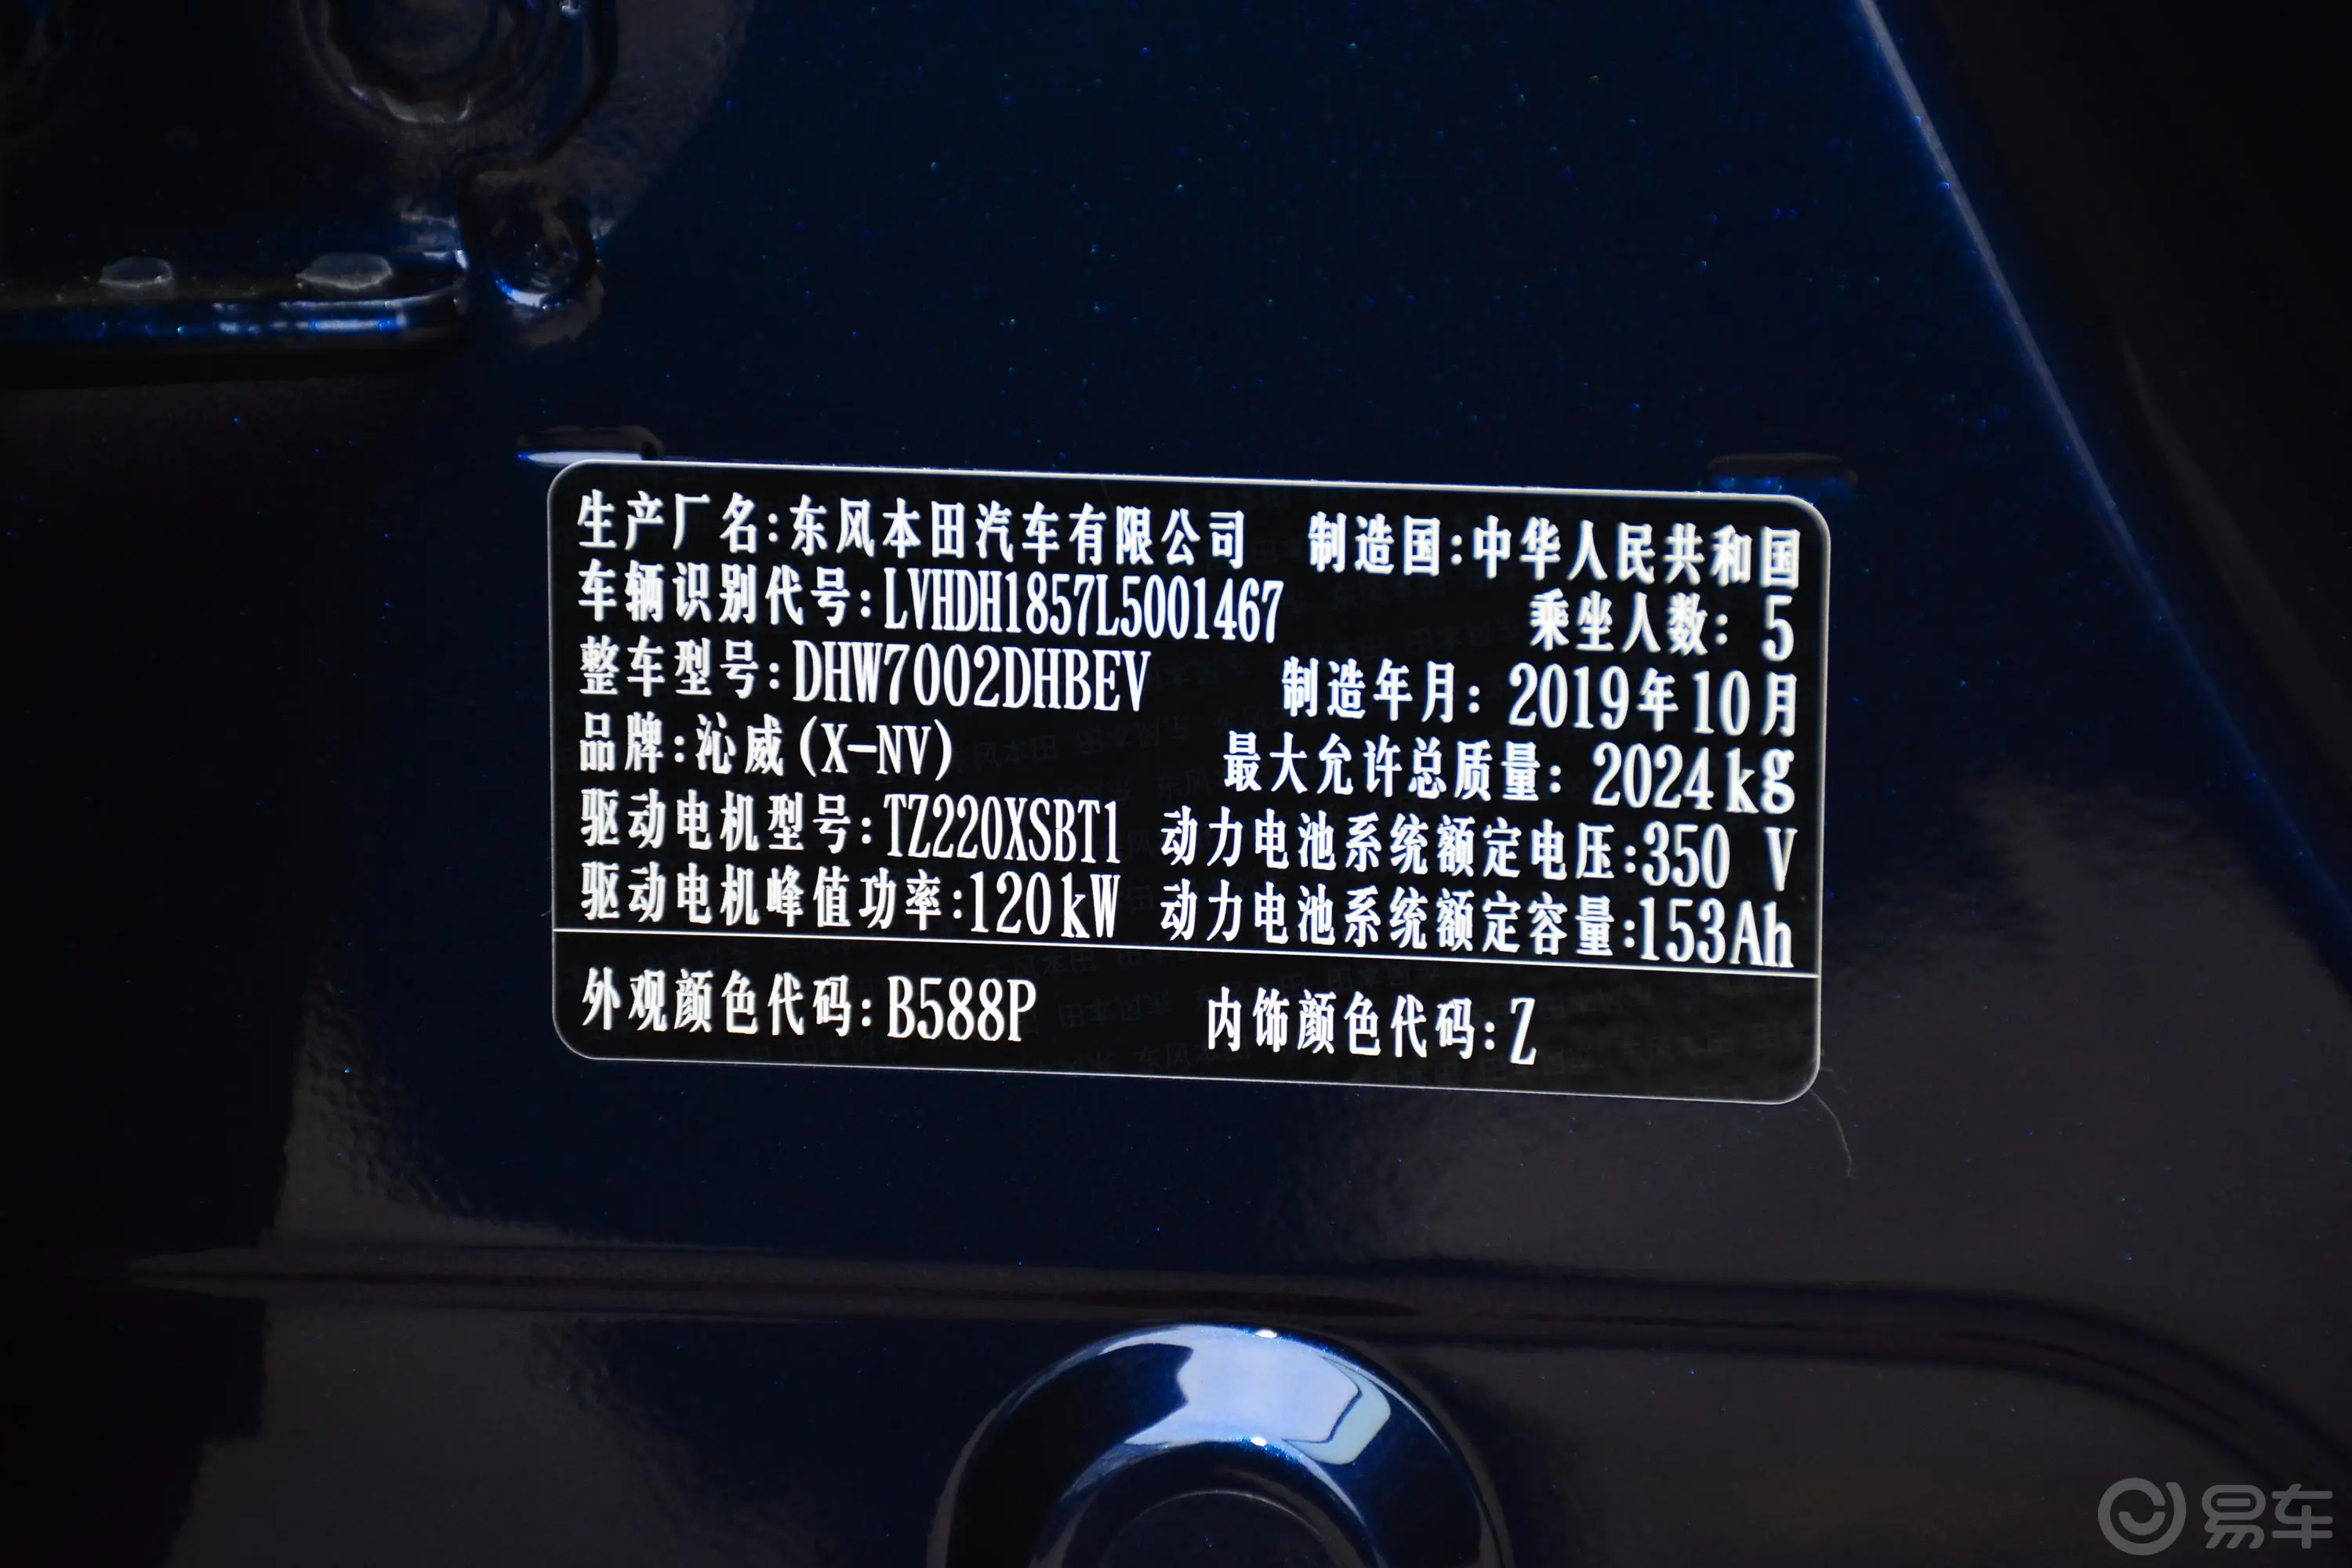 本田X-NV电掣版车辆信息铭牌